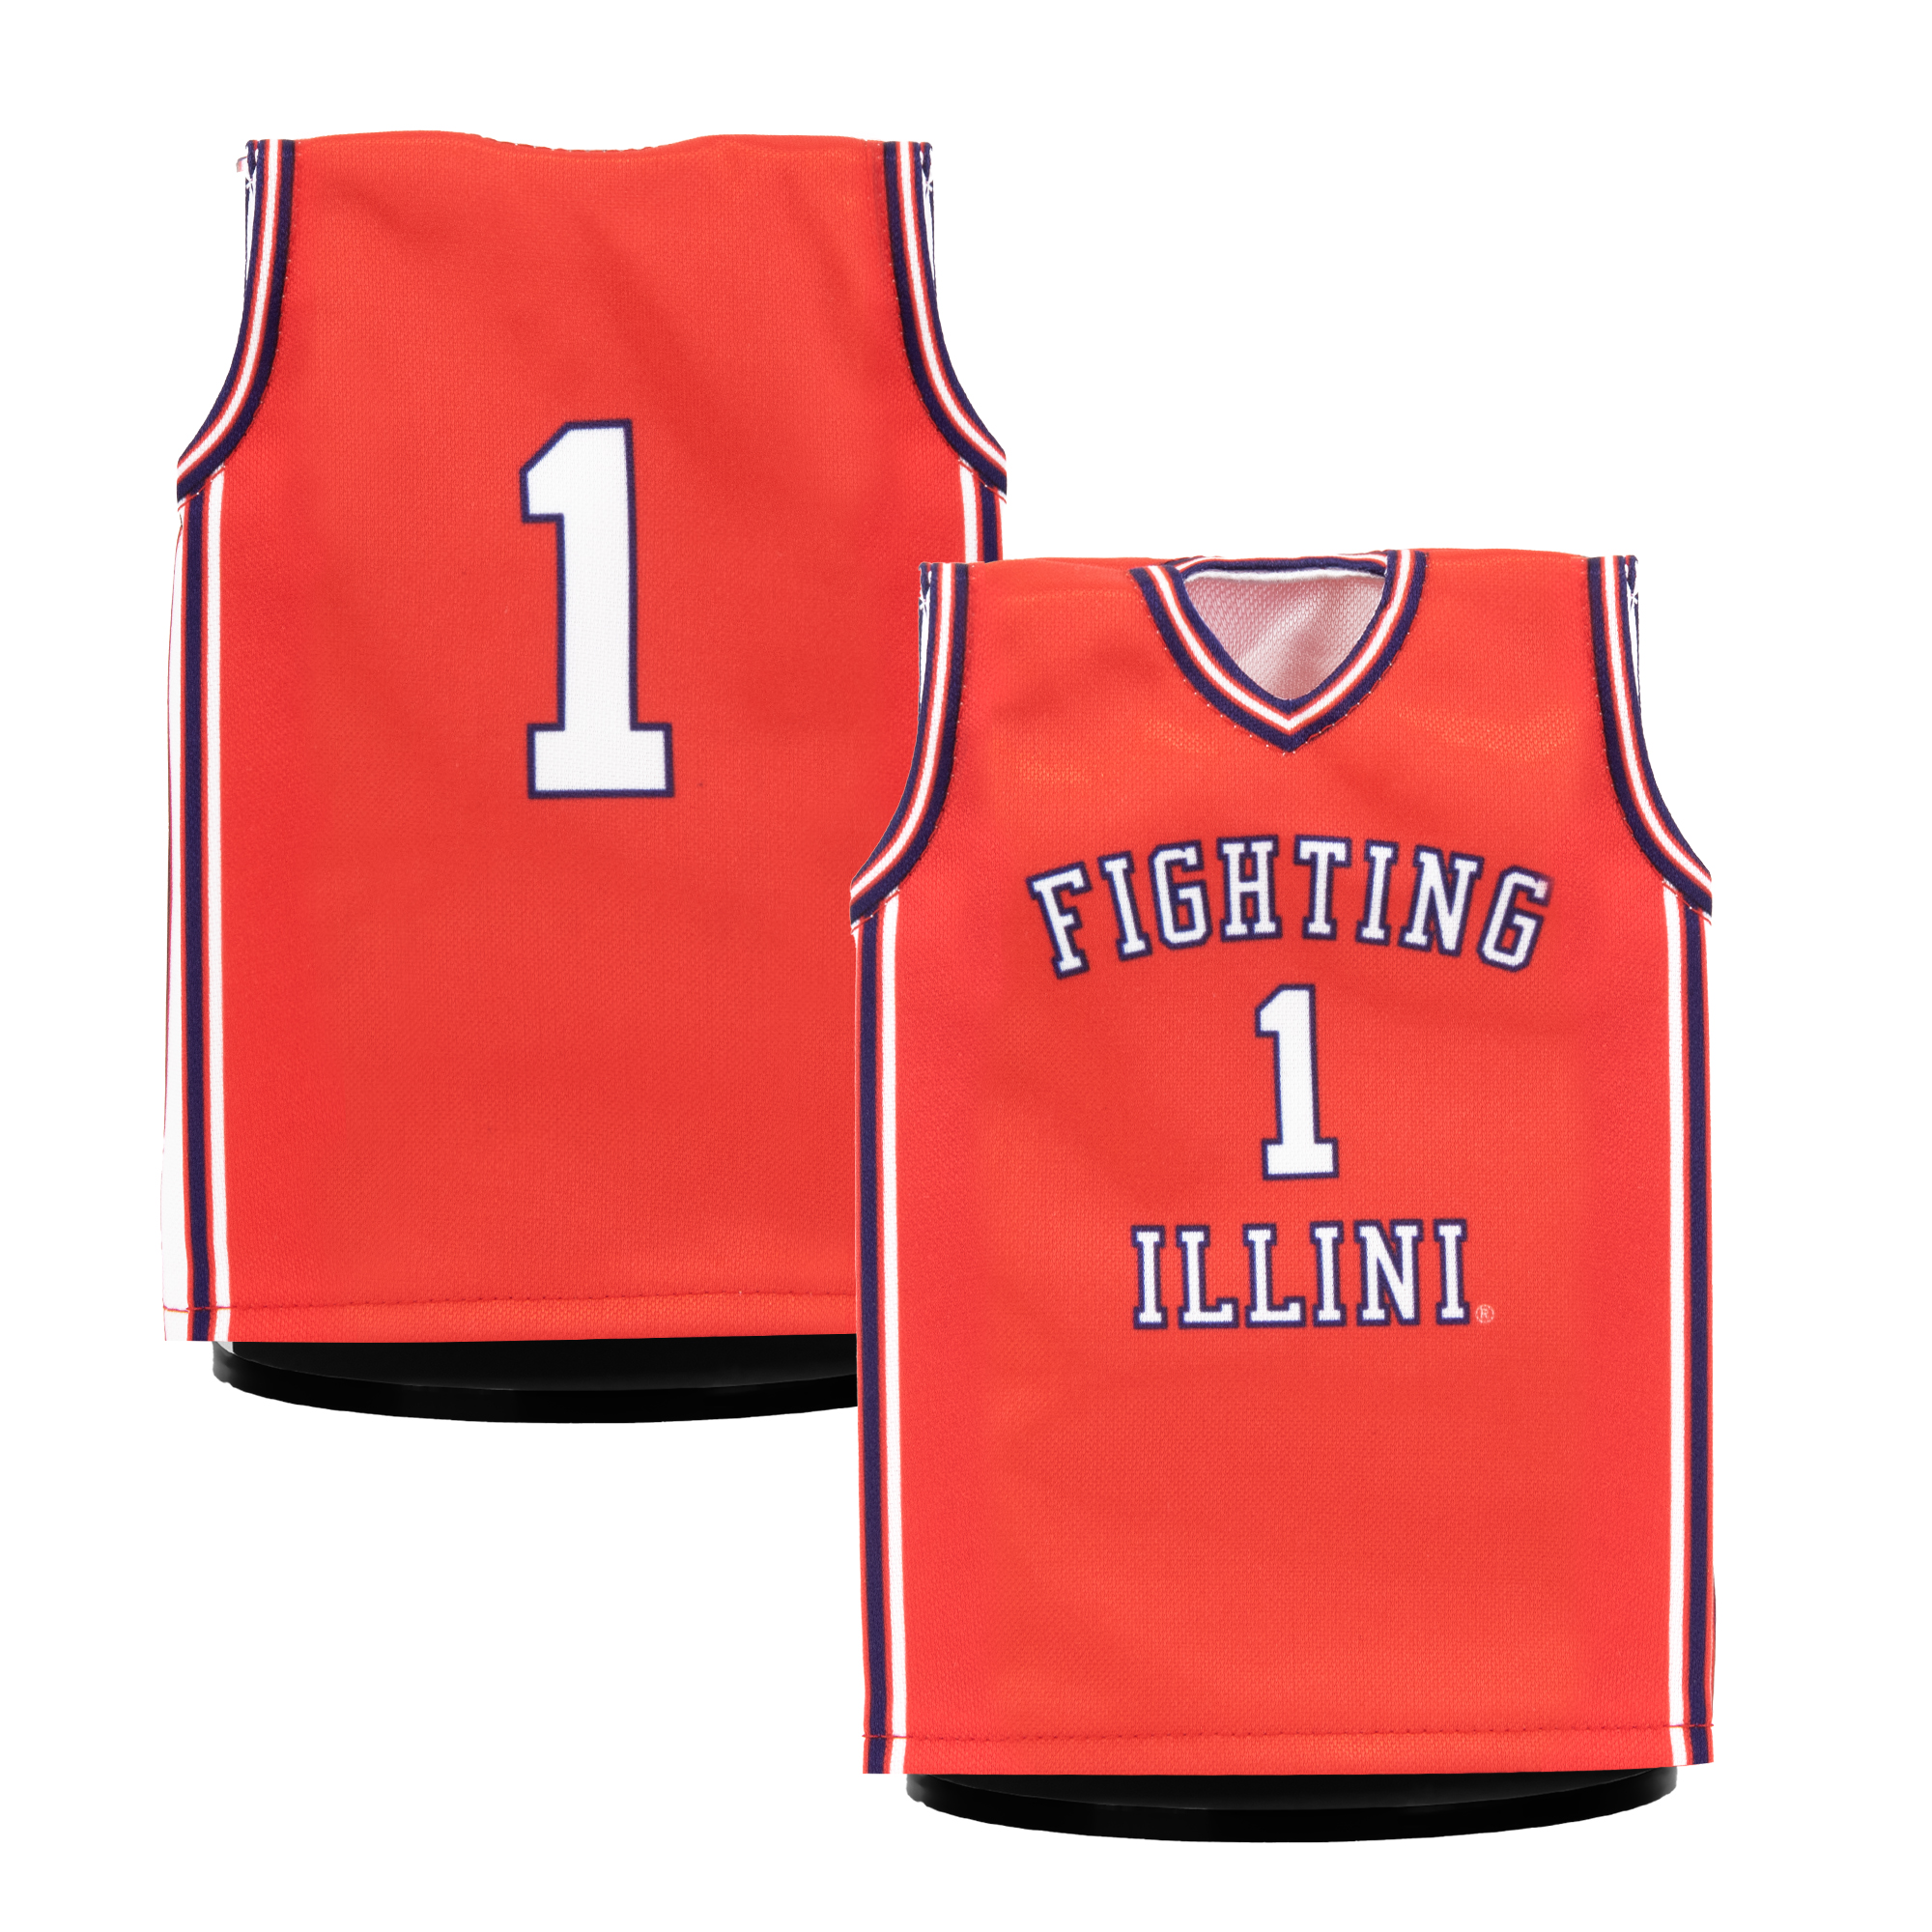 illinois basketball jersey